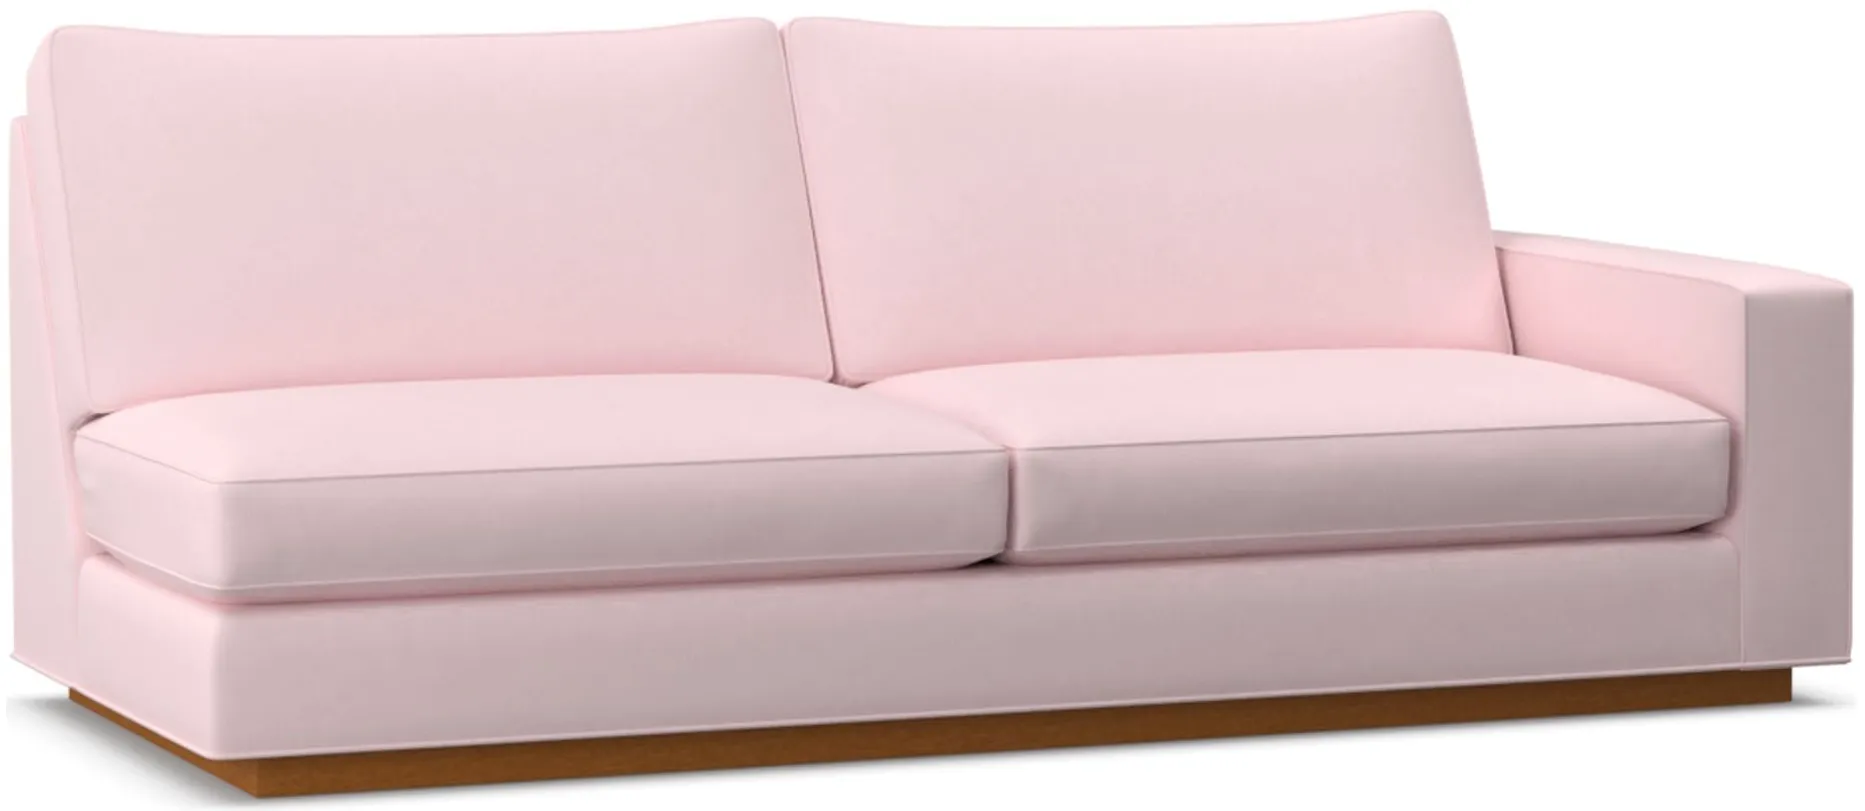 Harper Right Arm Sofa